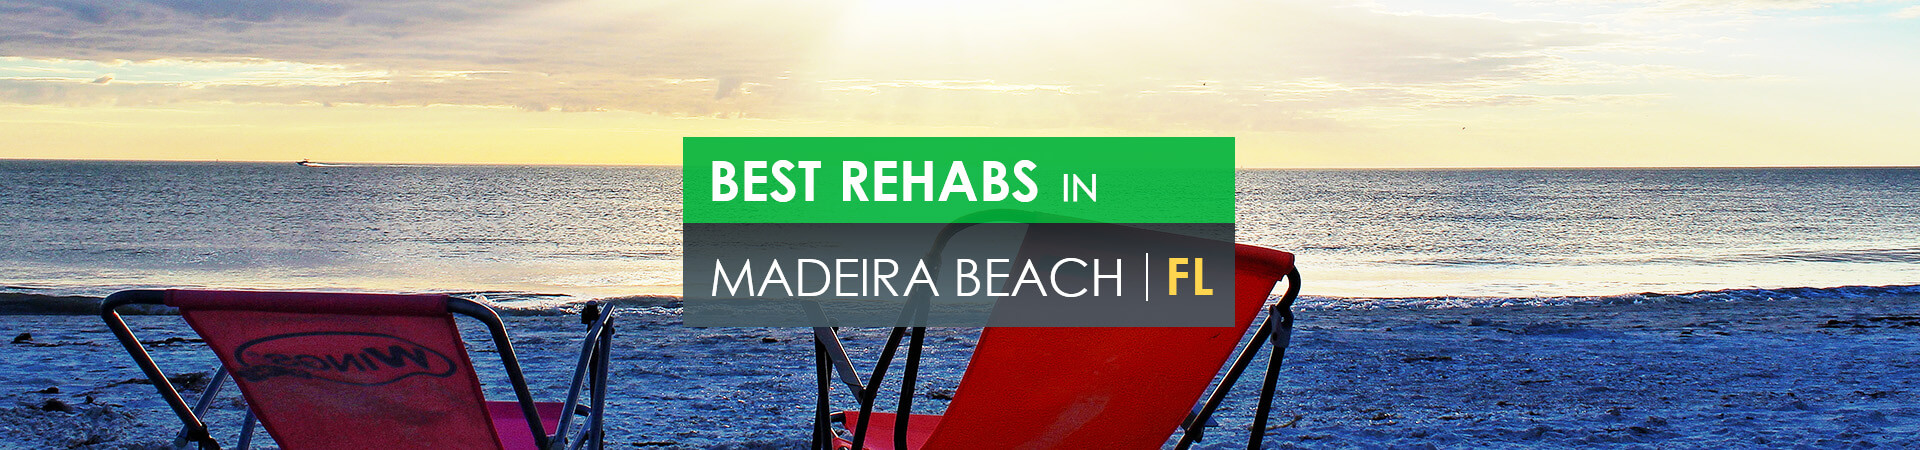 Best rehabs in Madeira Beach, FL